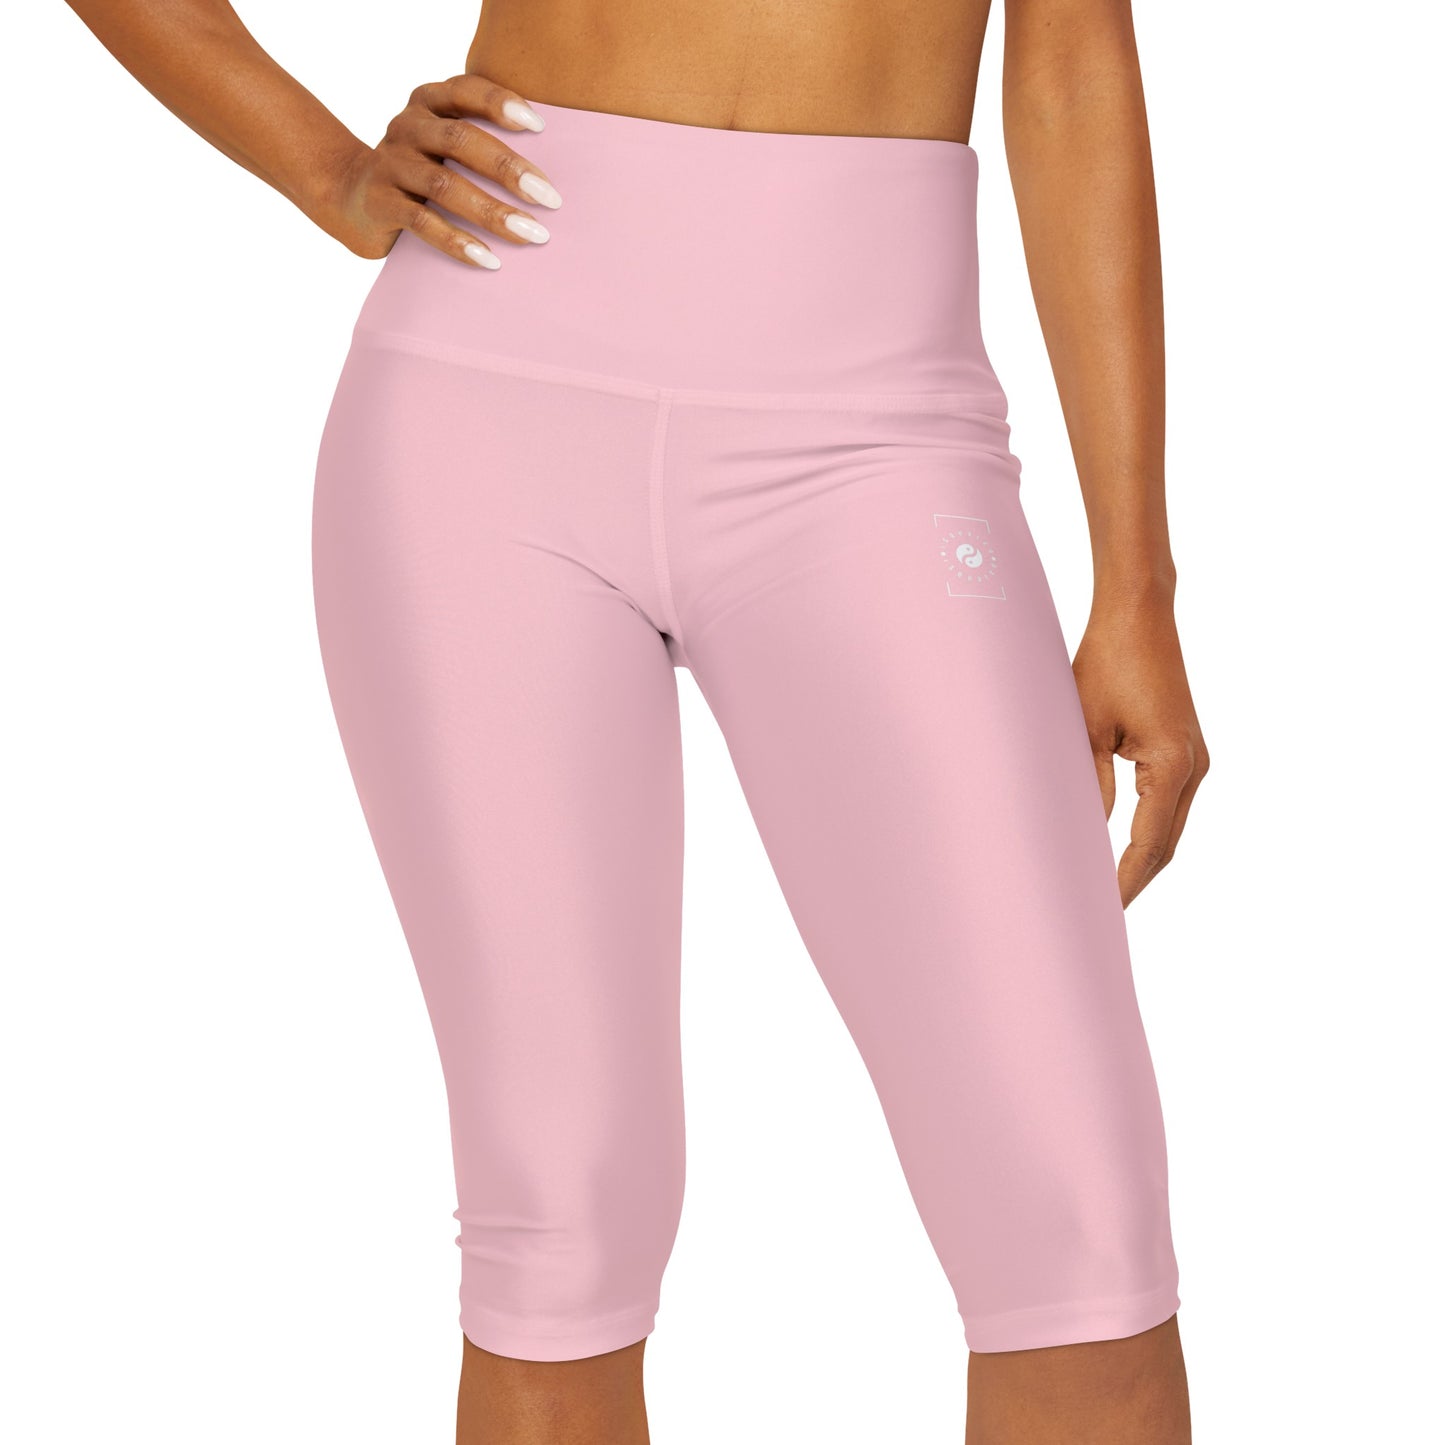 FFCCD4 Light Pink - High Waisted Capri Leggings